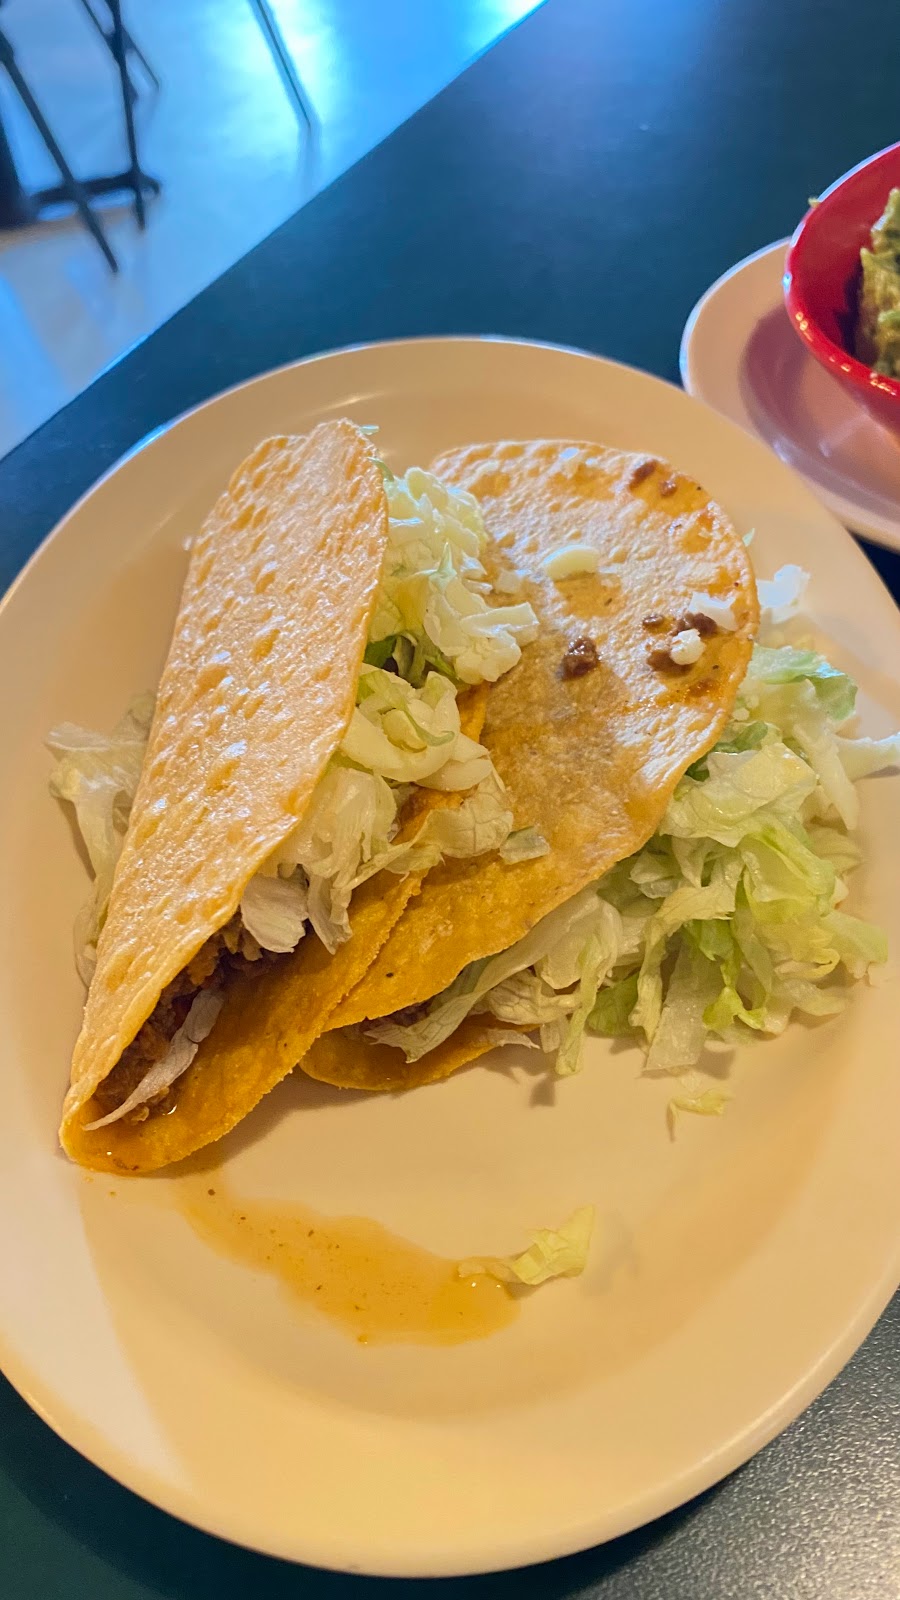 Ricos Mexican Restaurant | 386 E Atlanta Rd, Stockbridge, GA 30281, USA | Phone: (678) 289-5740